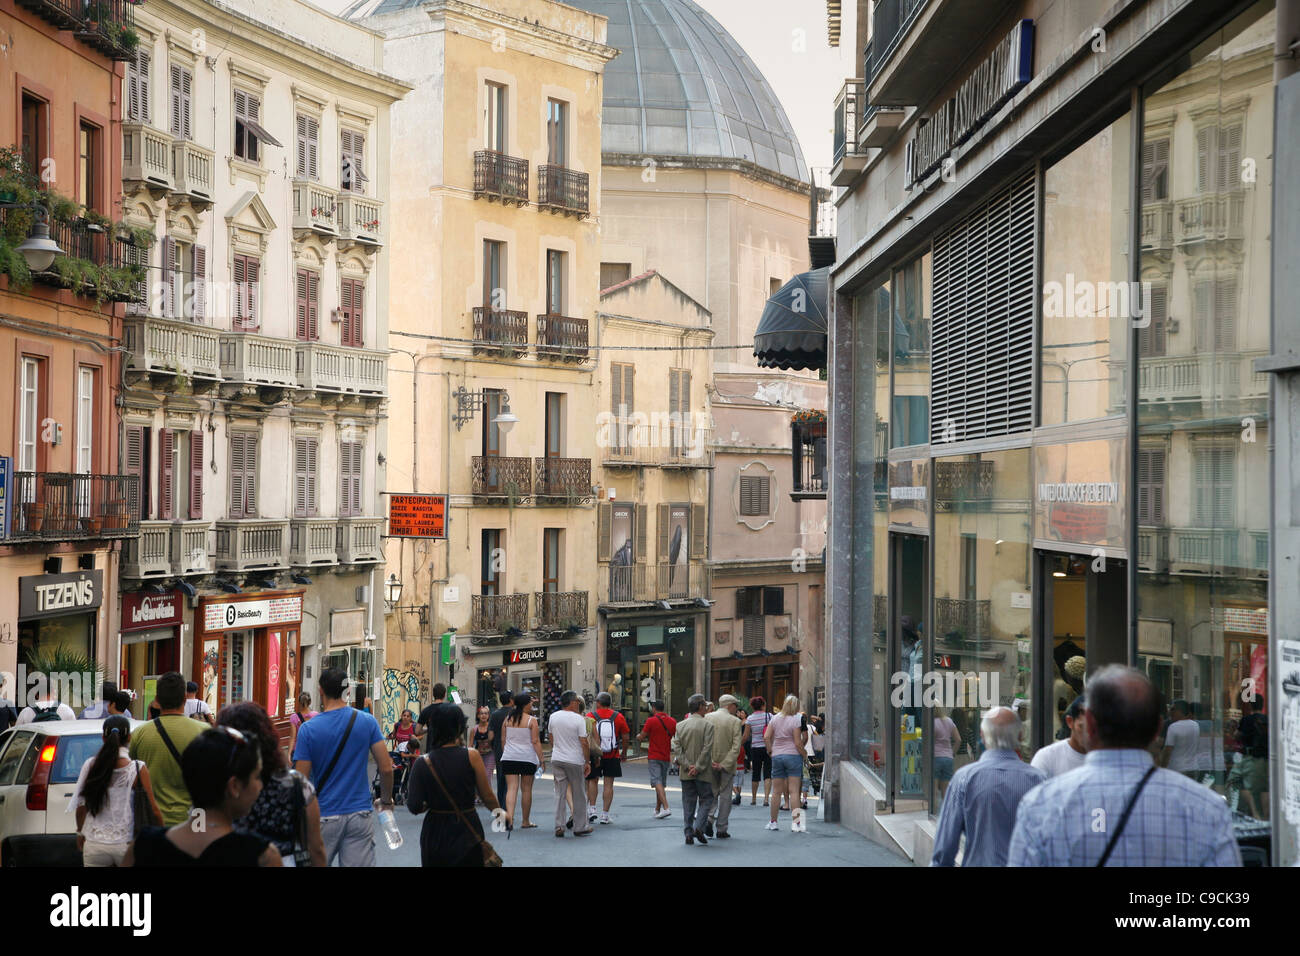 Les gens qui marchent dans la Via Giuseppe Manno, une rue piétonne avec de nombreux magasins, Cagliari, Sardaigne, Italie. Banque D'Images